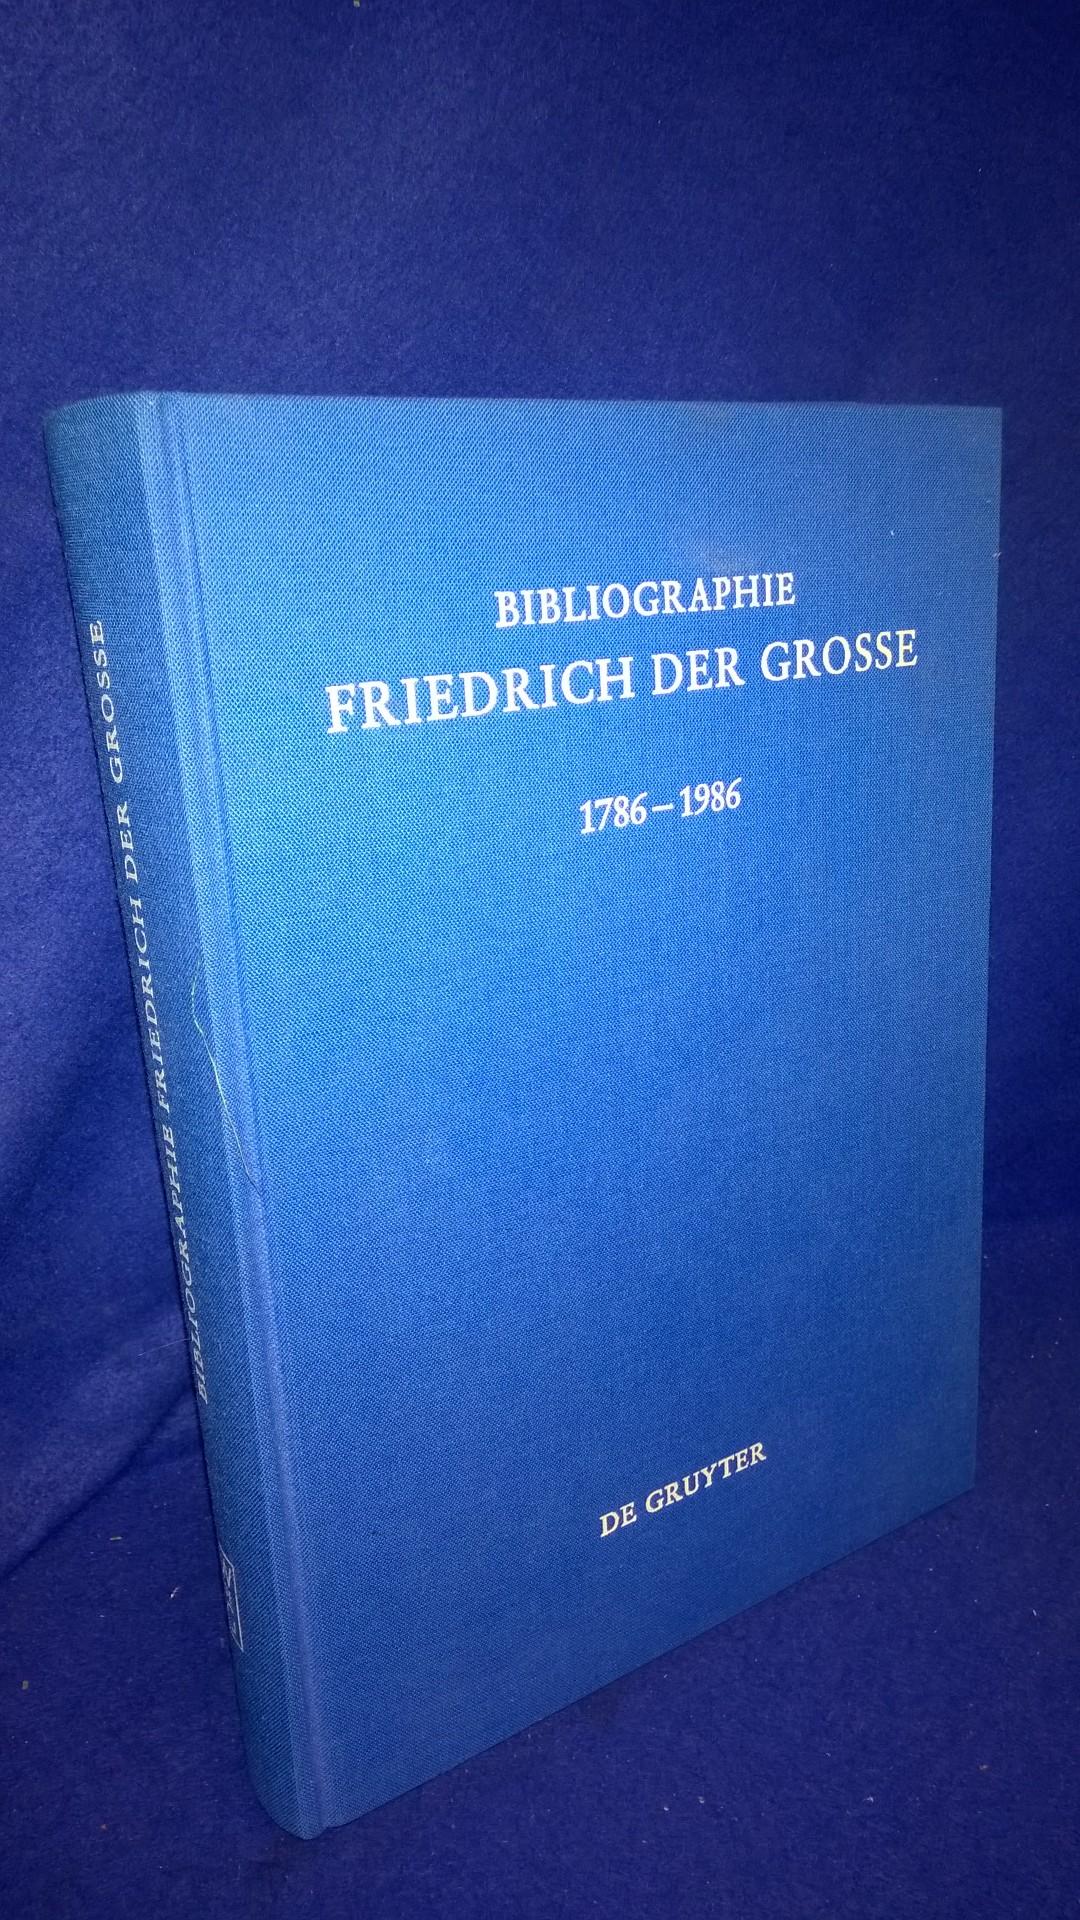 Bibliographie Friedrich der Grosse 1786-1986. Das Schrifttum des deutschen Sprachraums und der Übersetzungen aus Fremdsprachen.